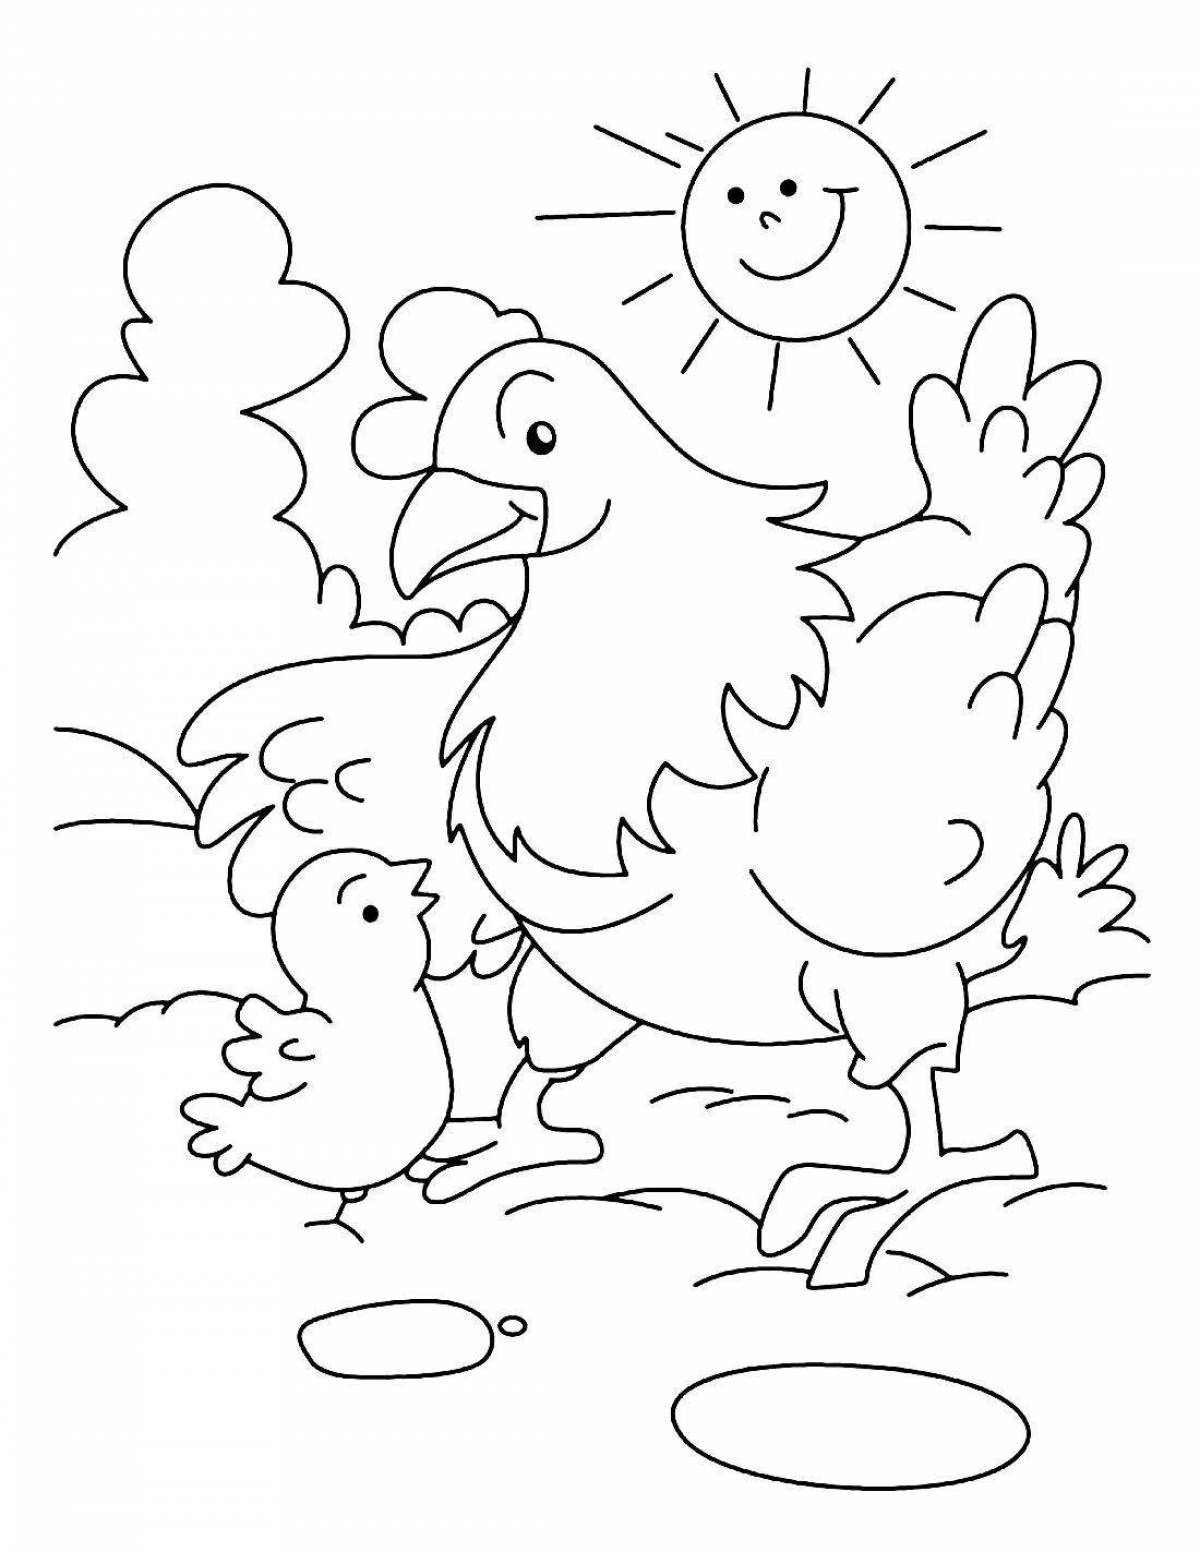 Замечательная страница раскраски домашней птицы для детей 5-6 лет